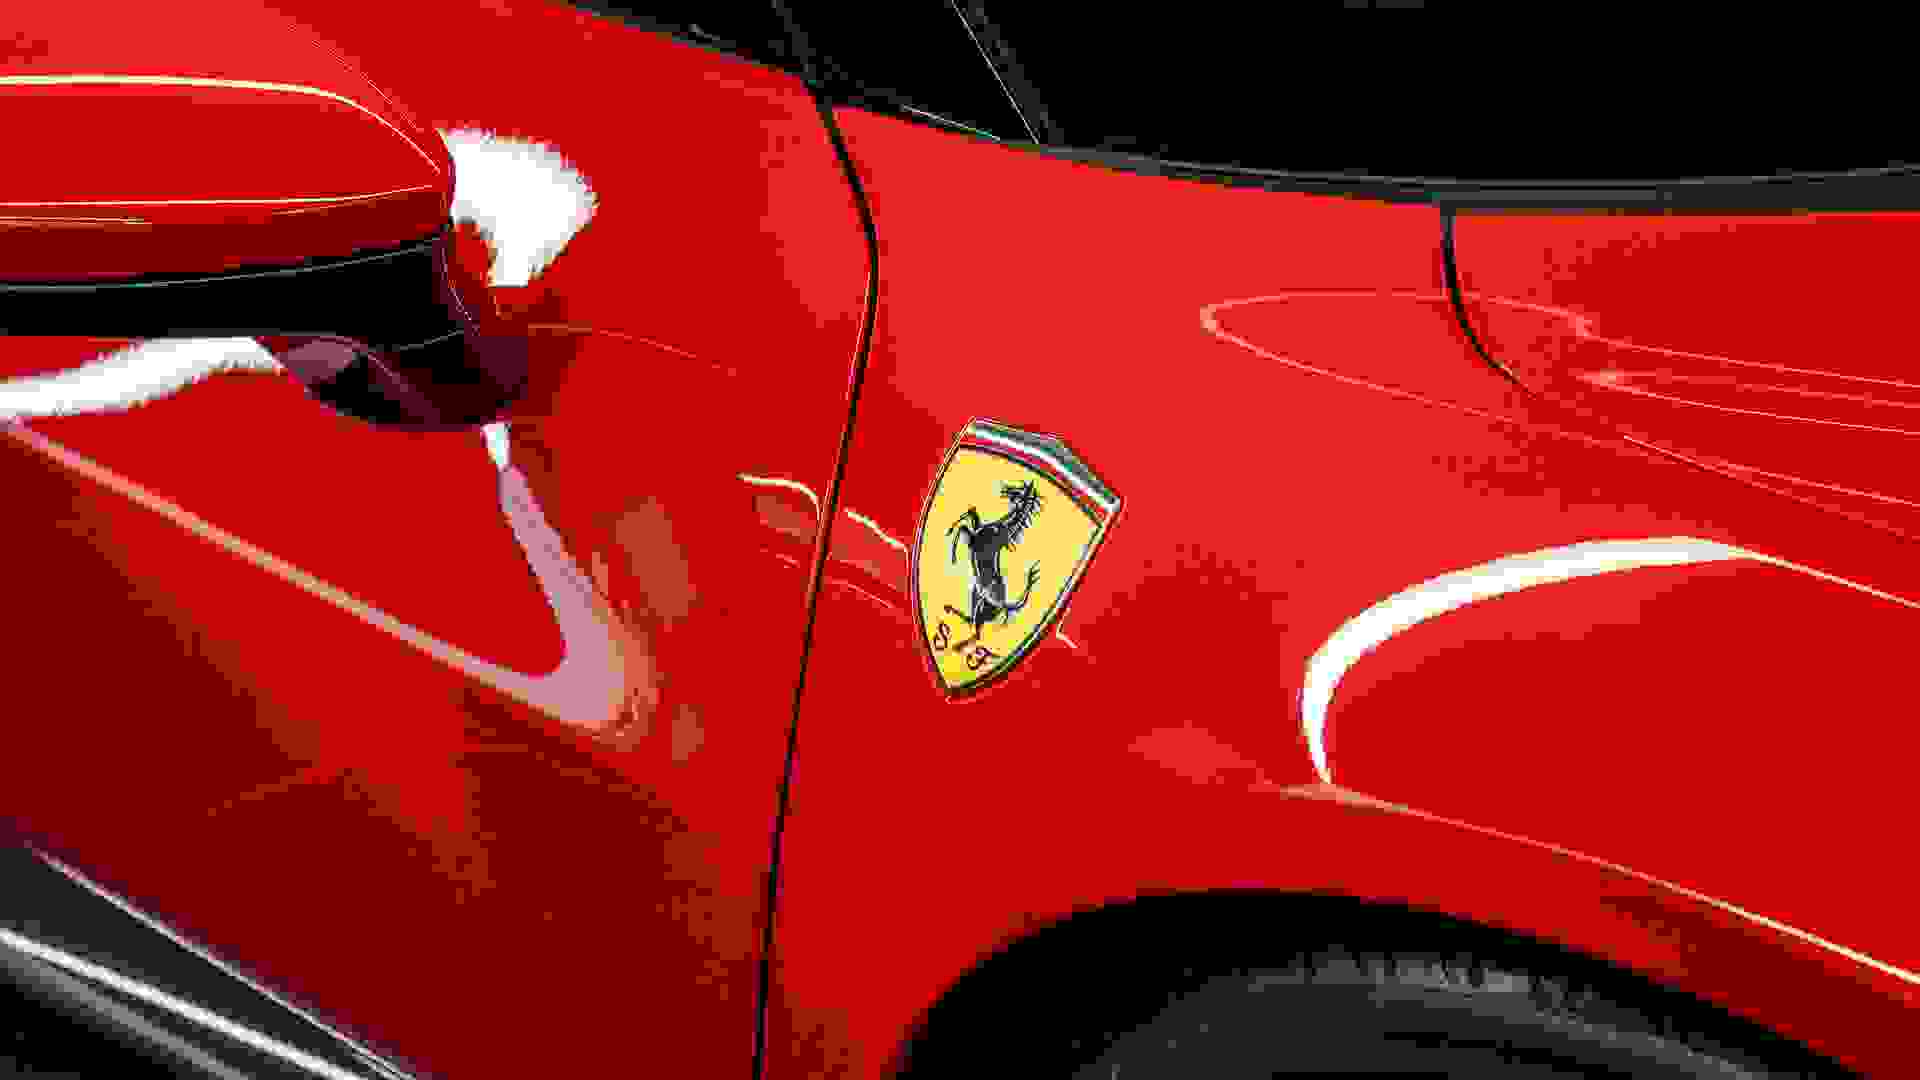 Ferrari 296 Photo e629446d-e0a1-4fab-a5eb-f9911aeee22c.jpg